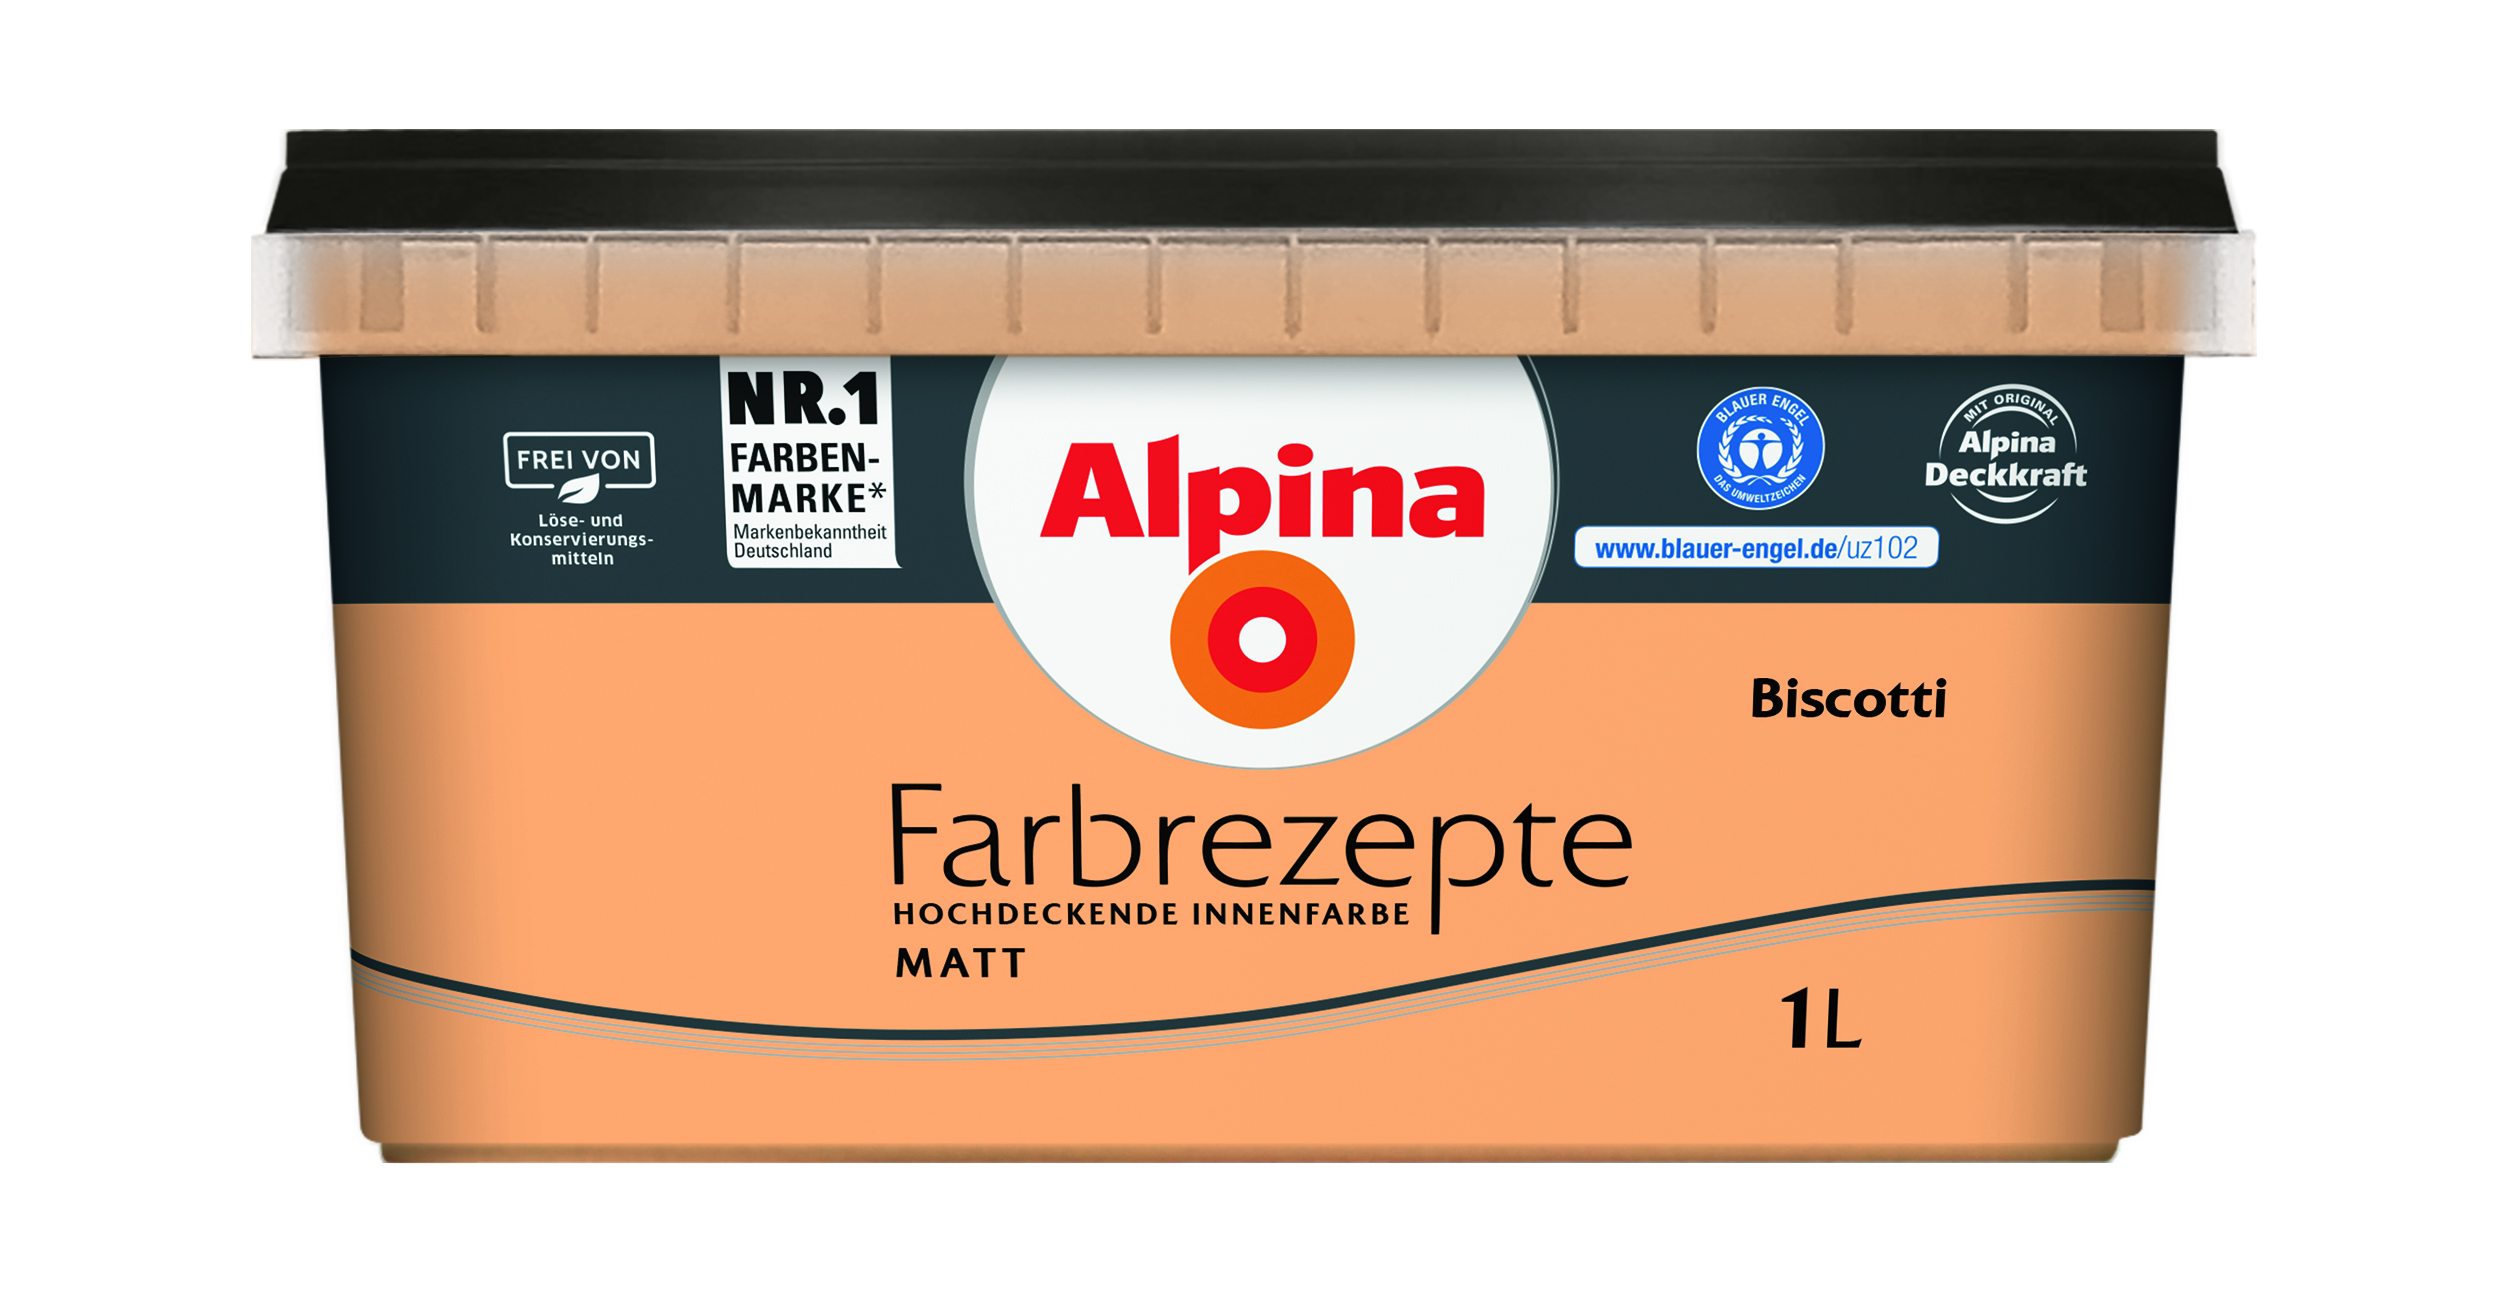 Alpina Farbrezepte Biscotti, 1L